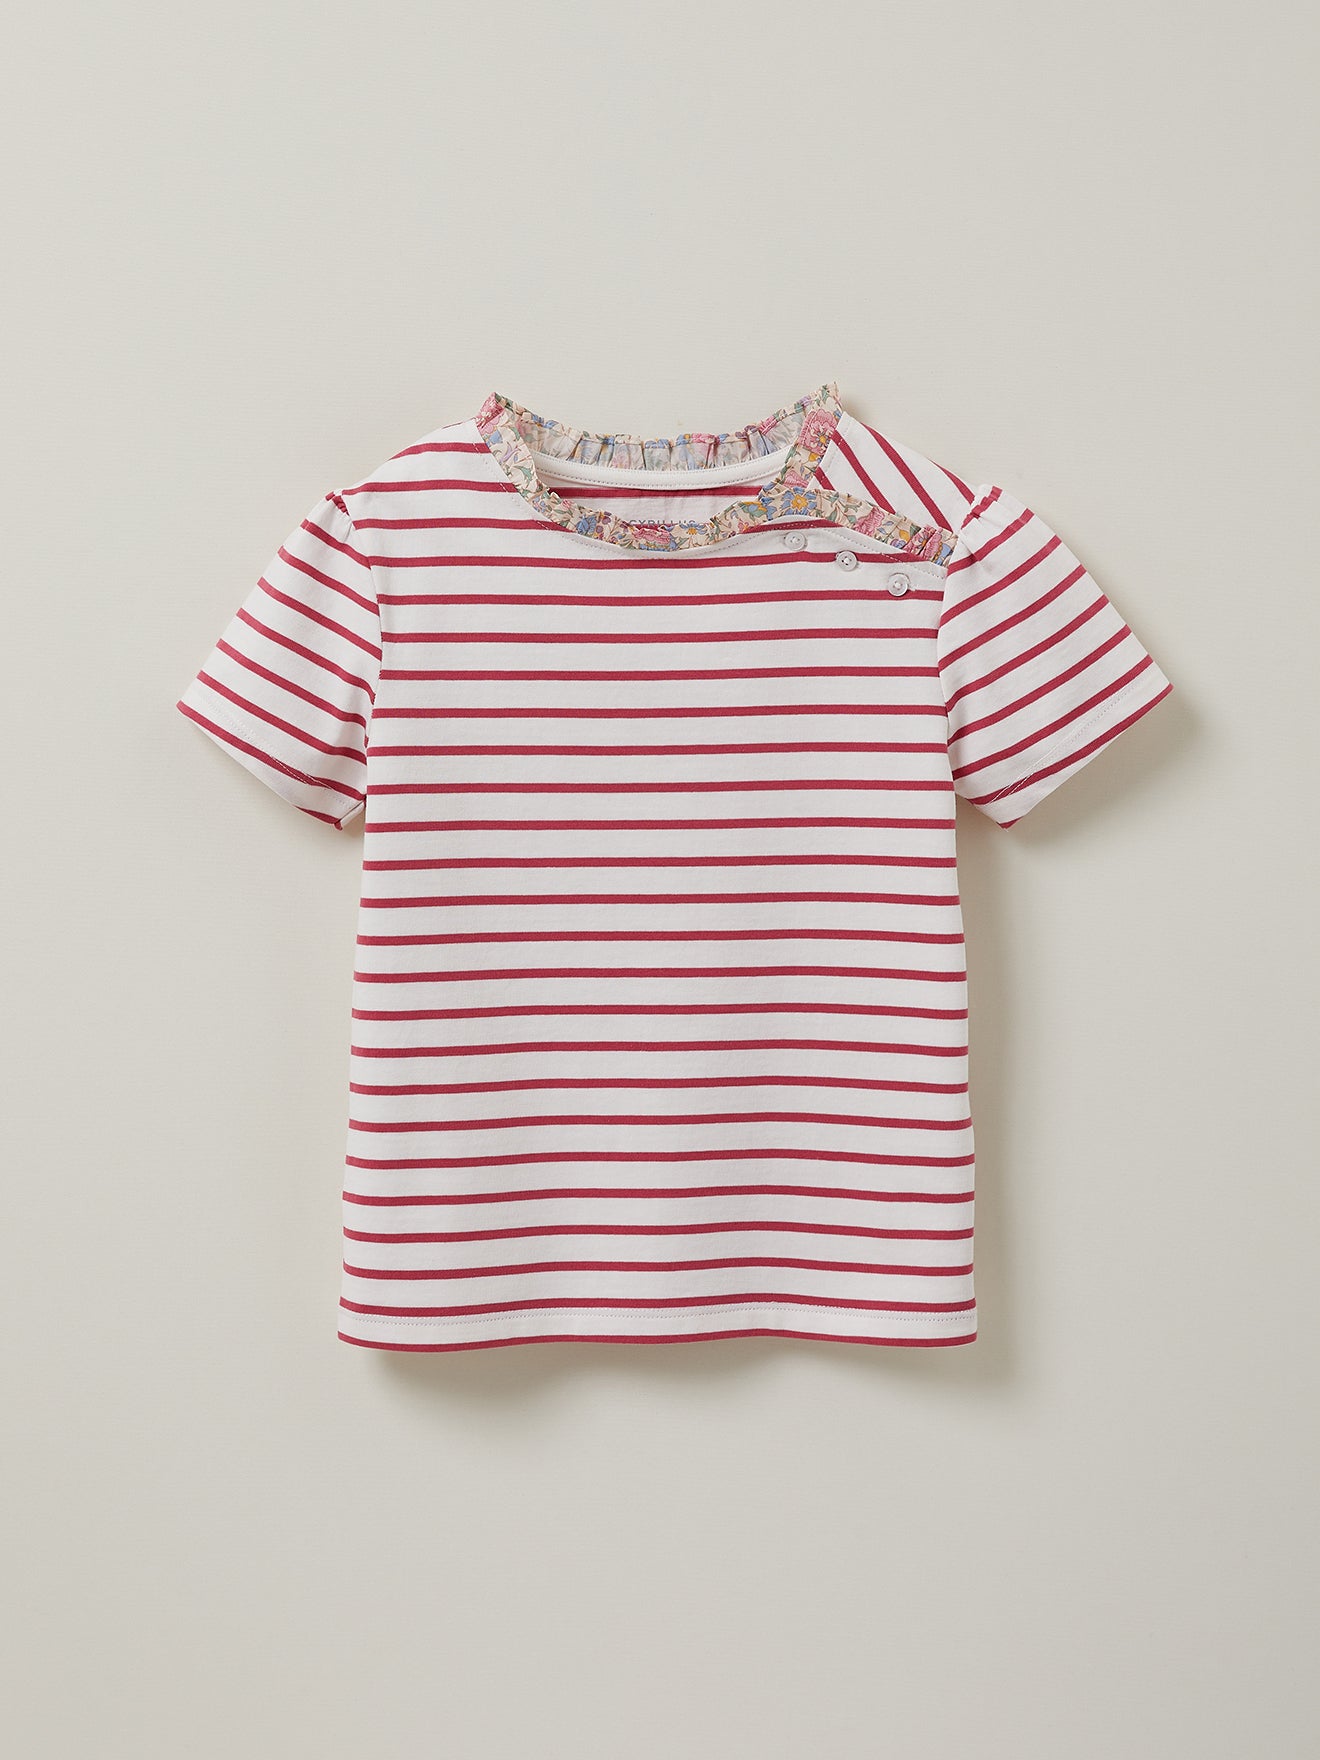 T-shirt marinière Fille Tissu Liberty - Coton Biologique